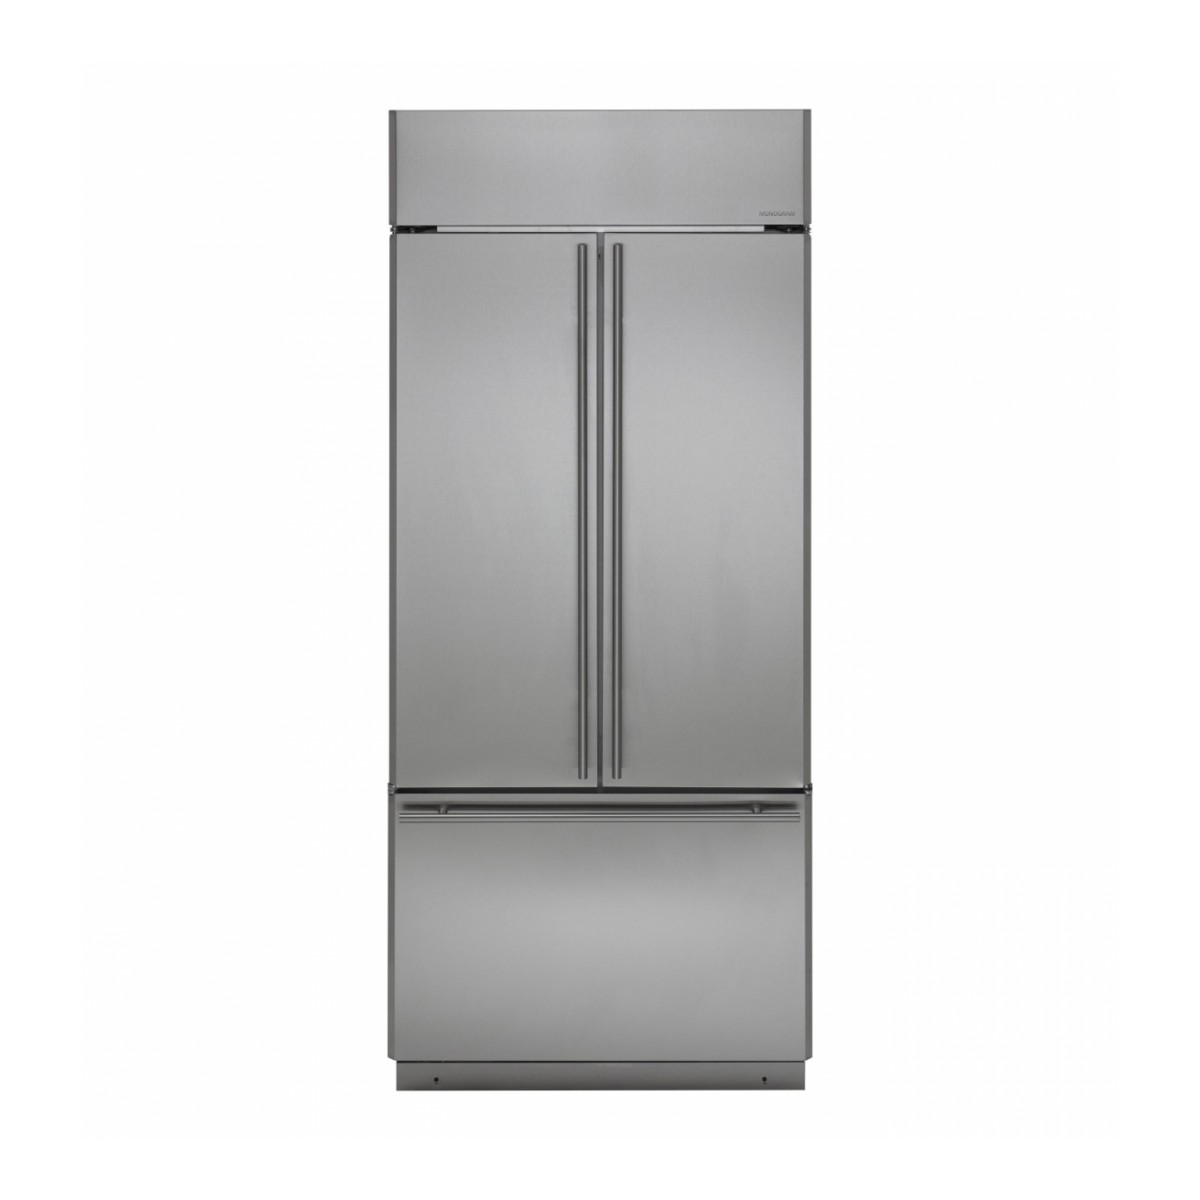 Monogram 36" Built-In French-Door Refrigerator